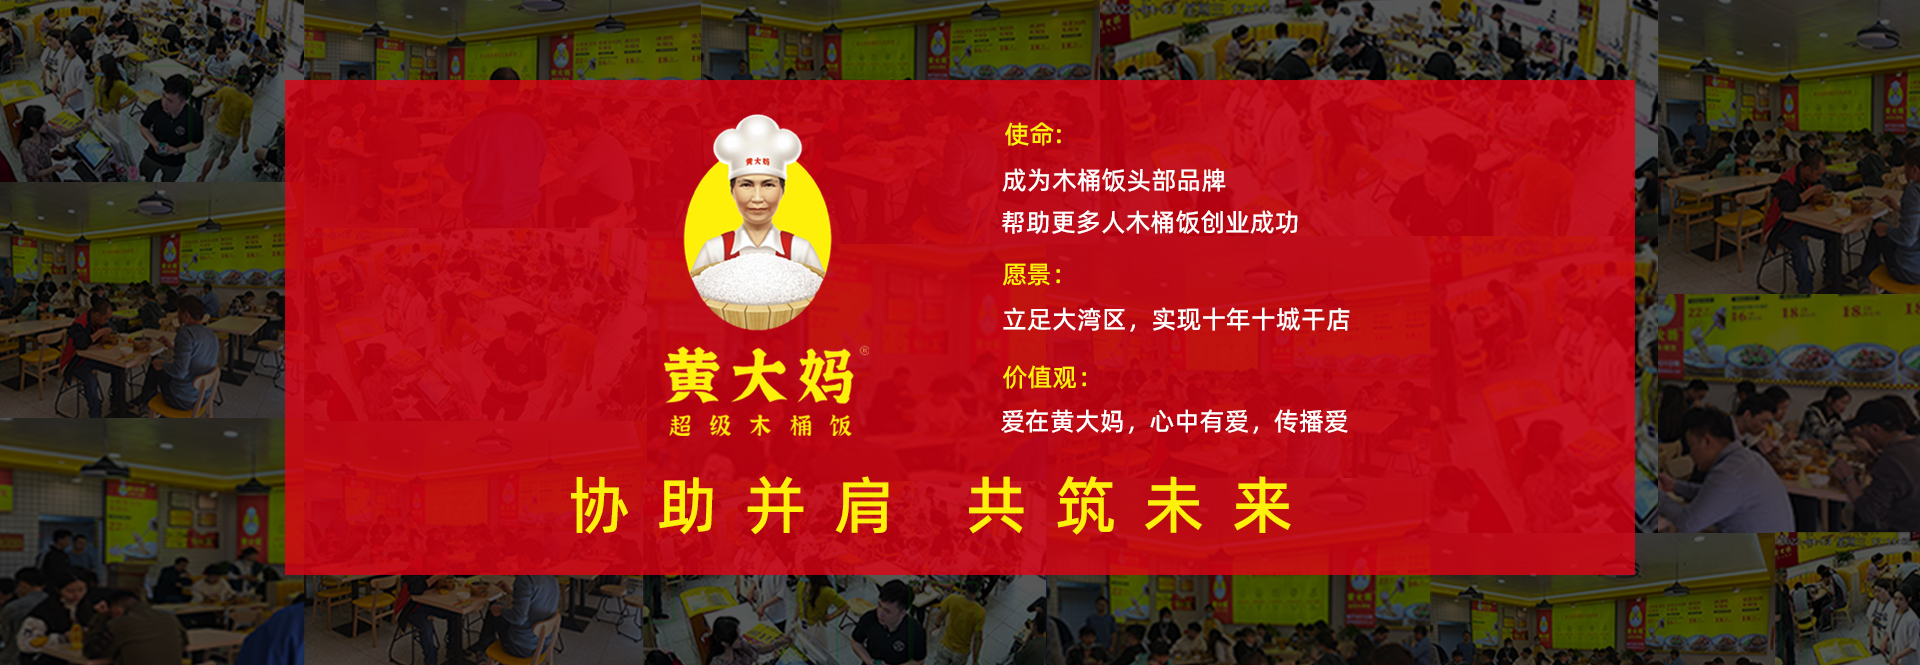 黃大媽餐飲管理（惠州）有限公司公司介紹